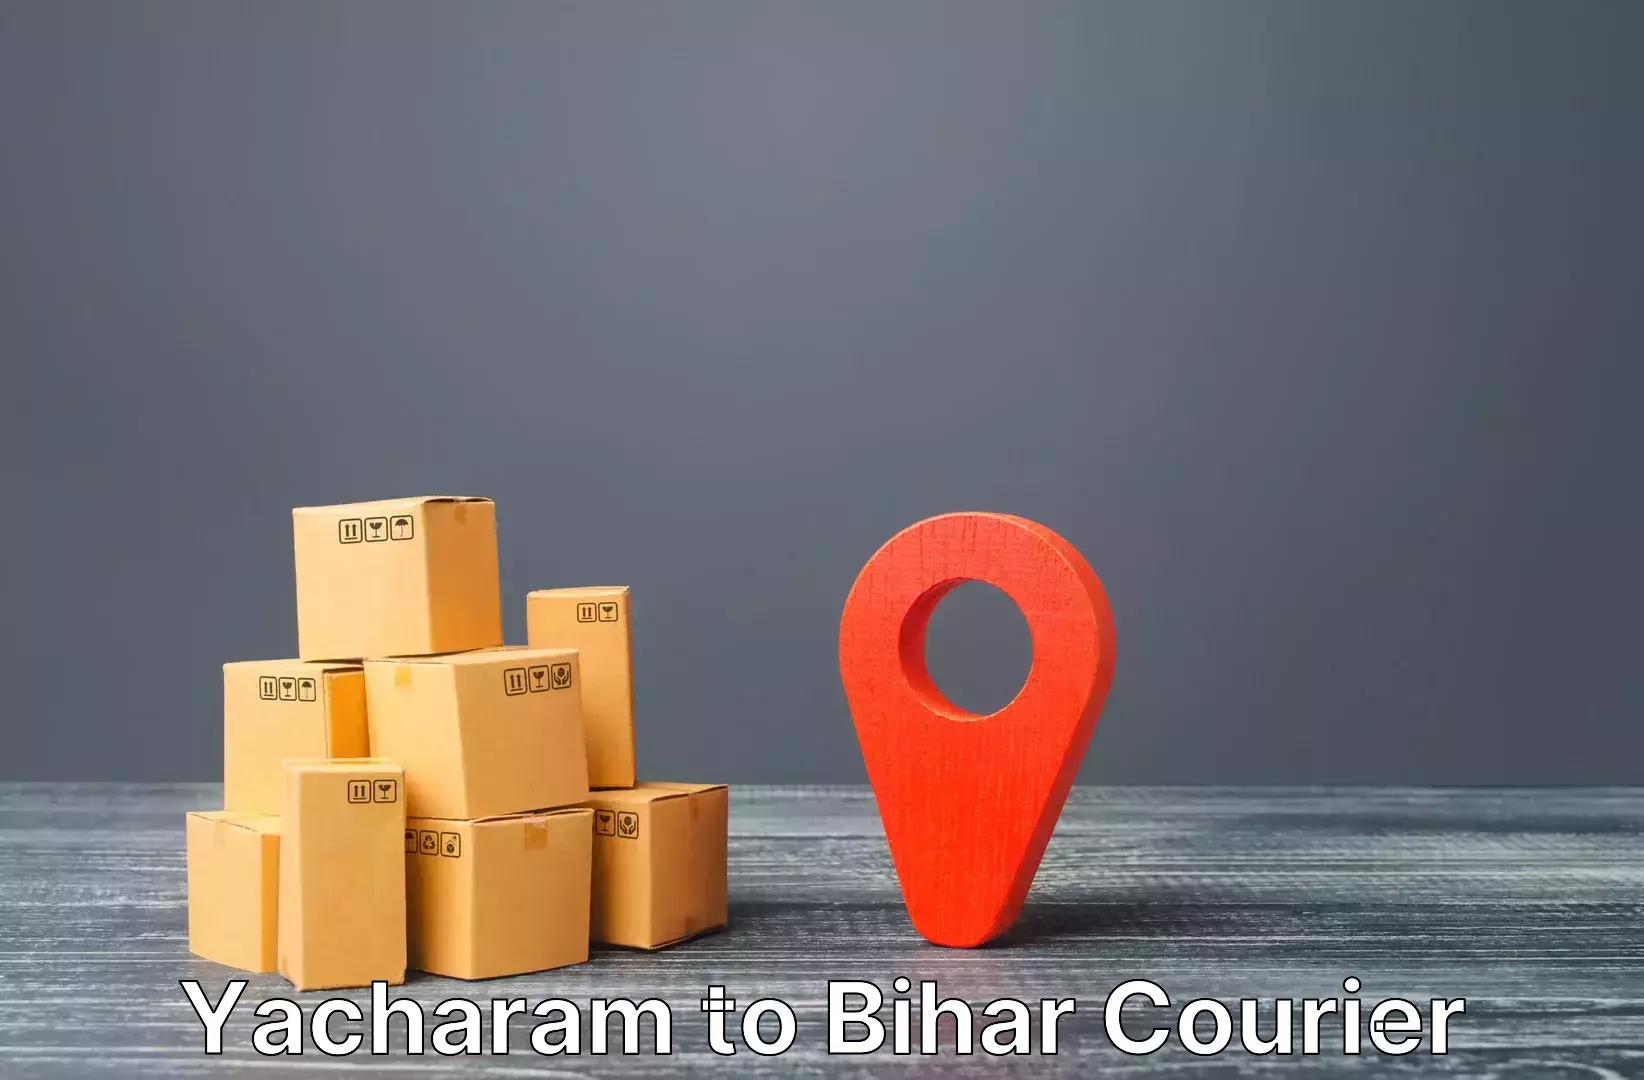 Luggage shipment tracking Yacharam to Bakhri